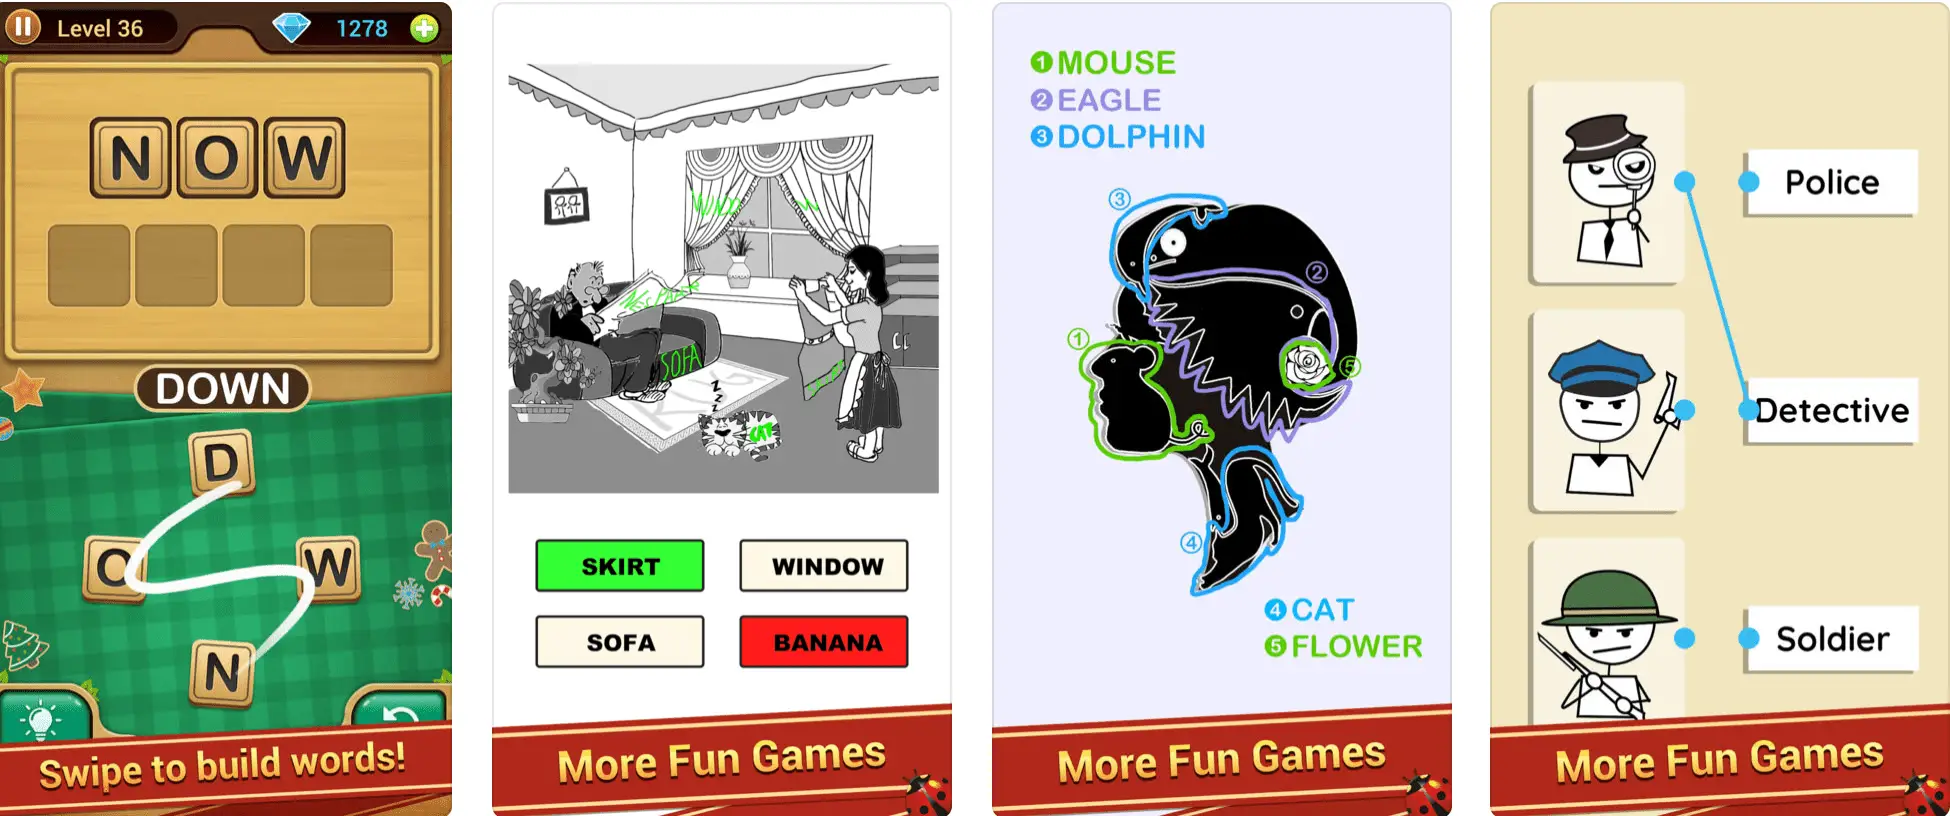 Captura de tela do jogo para iPhone, link de palavra por ZHOU JIAPING